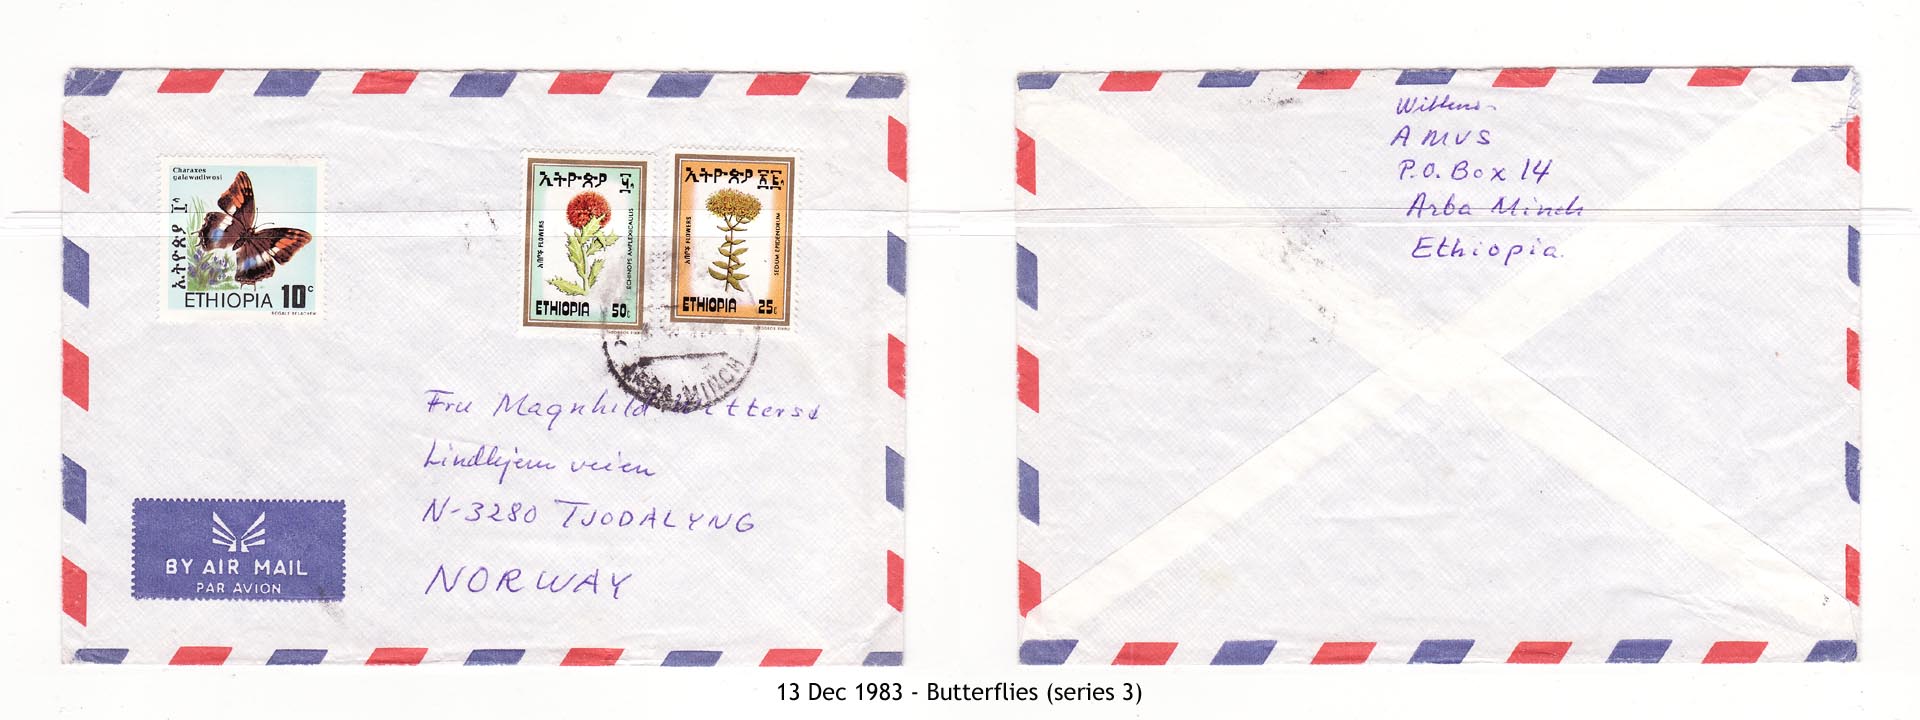 19831213 - Butterflies (series 3)